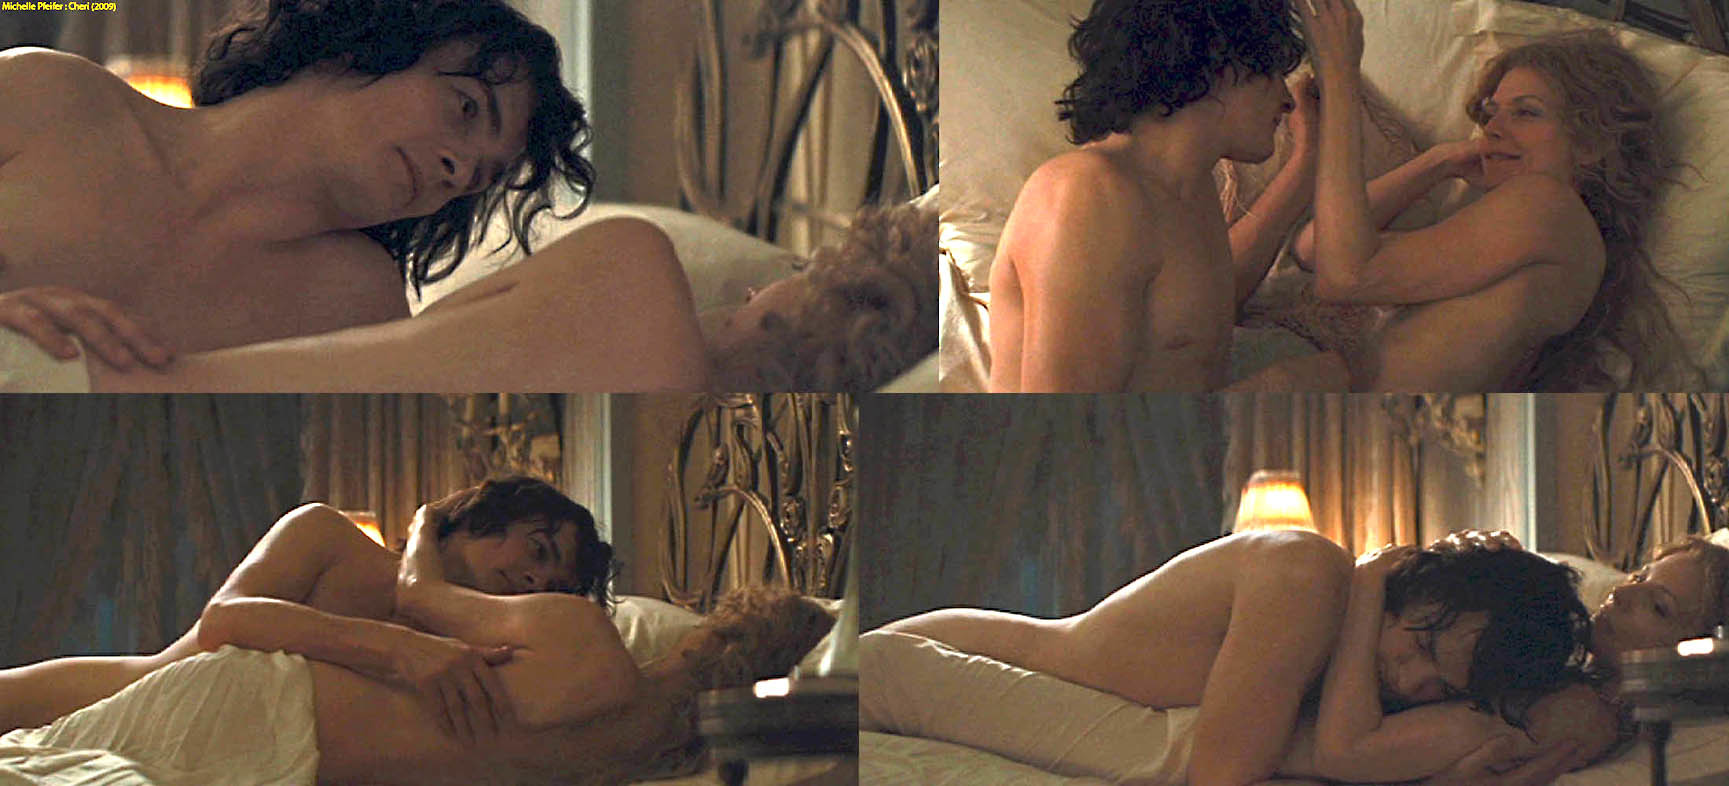 Michelle Pfeiffer nude pics.